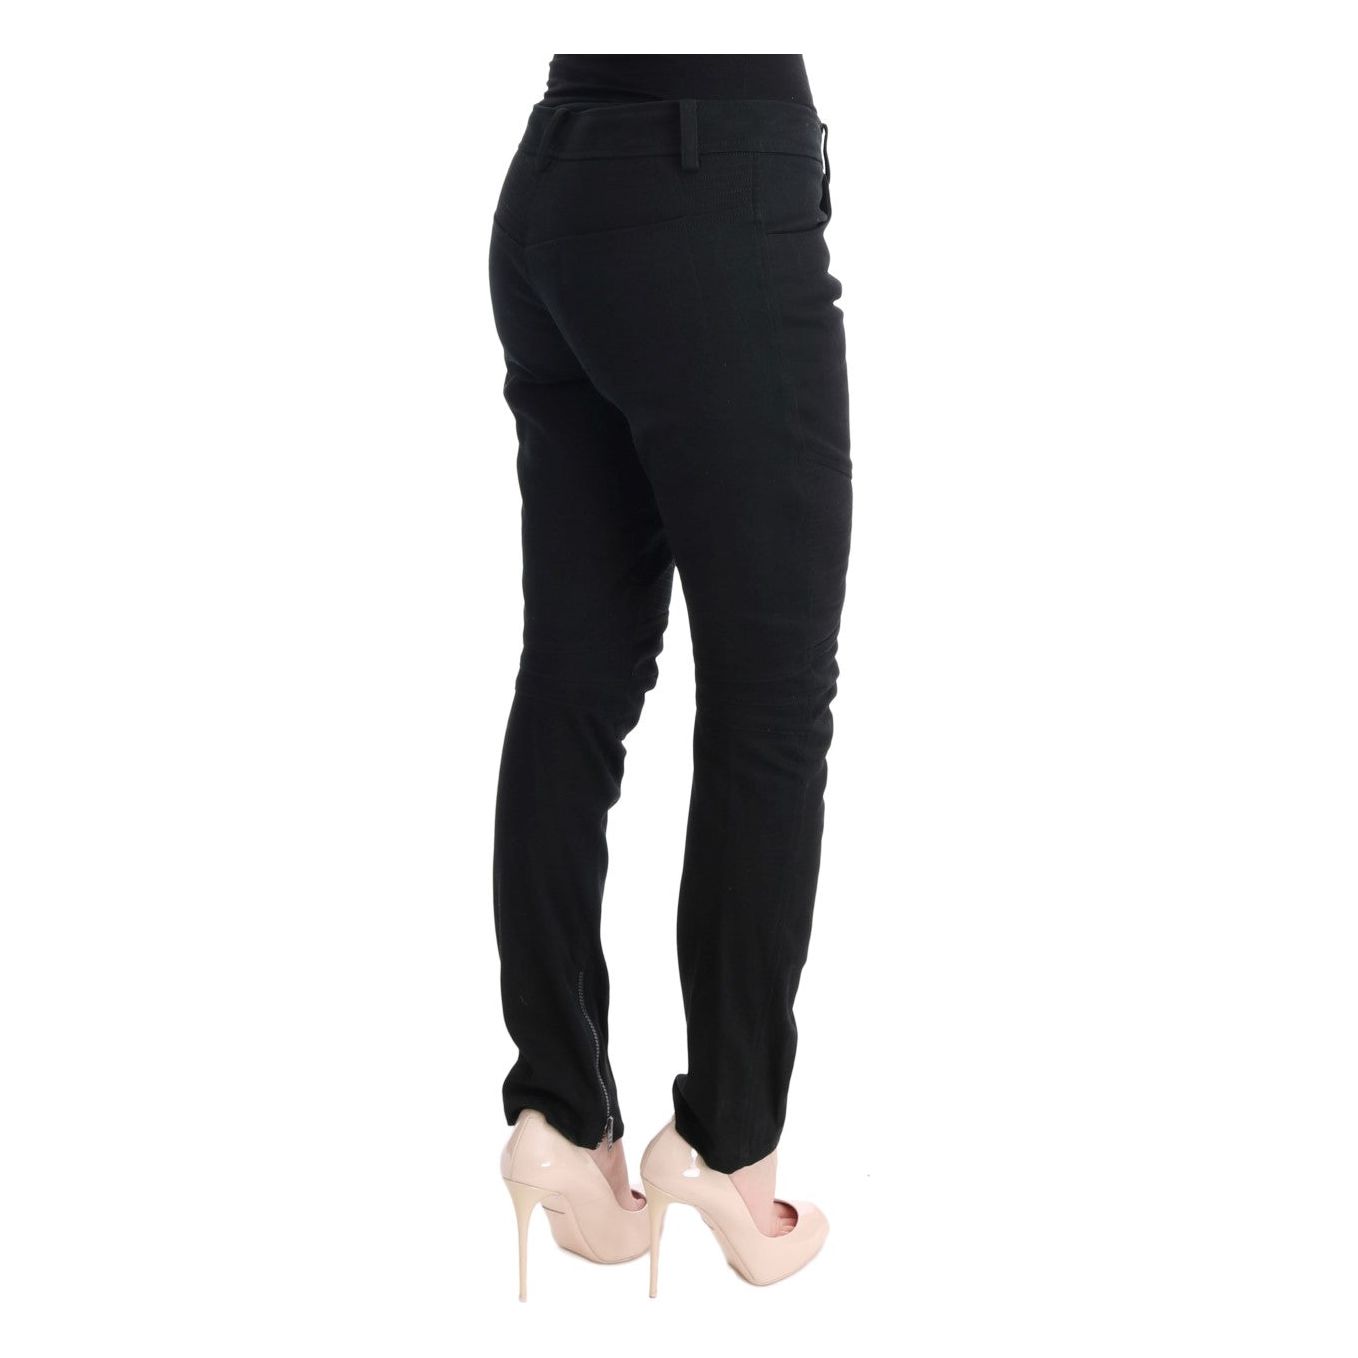 Ermanno Scervino Chic Black Slim Fit Trousers black-cotton-slim-fit-casual-pants Jeans & Pants 449168-black-cotton-slim-fit-casual-pants-3.jpg